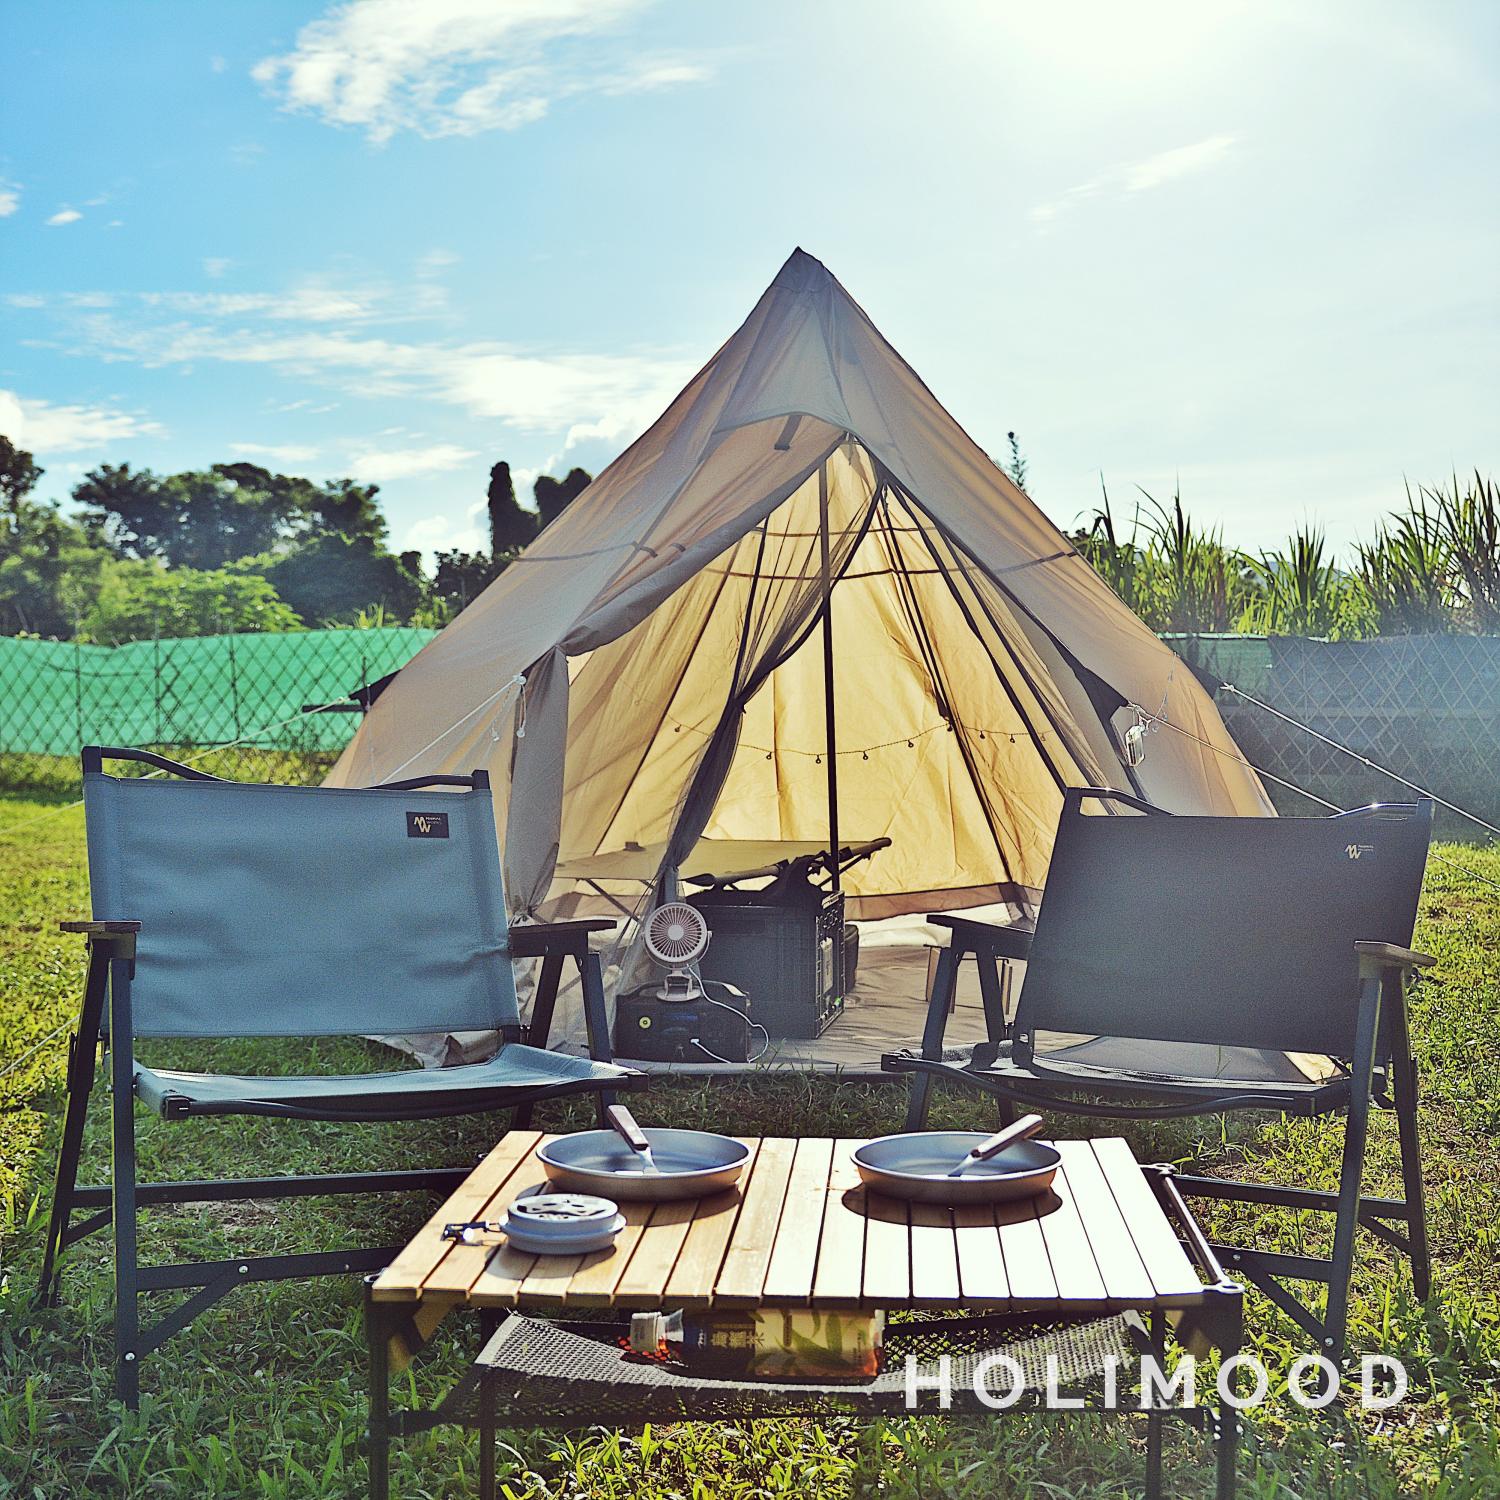 EC GO Outdoor- 露營用品出租 二人露營達人營具租借套裝 -免費送貨 2